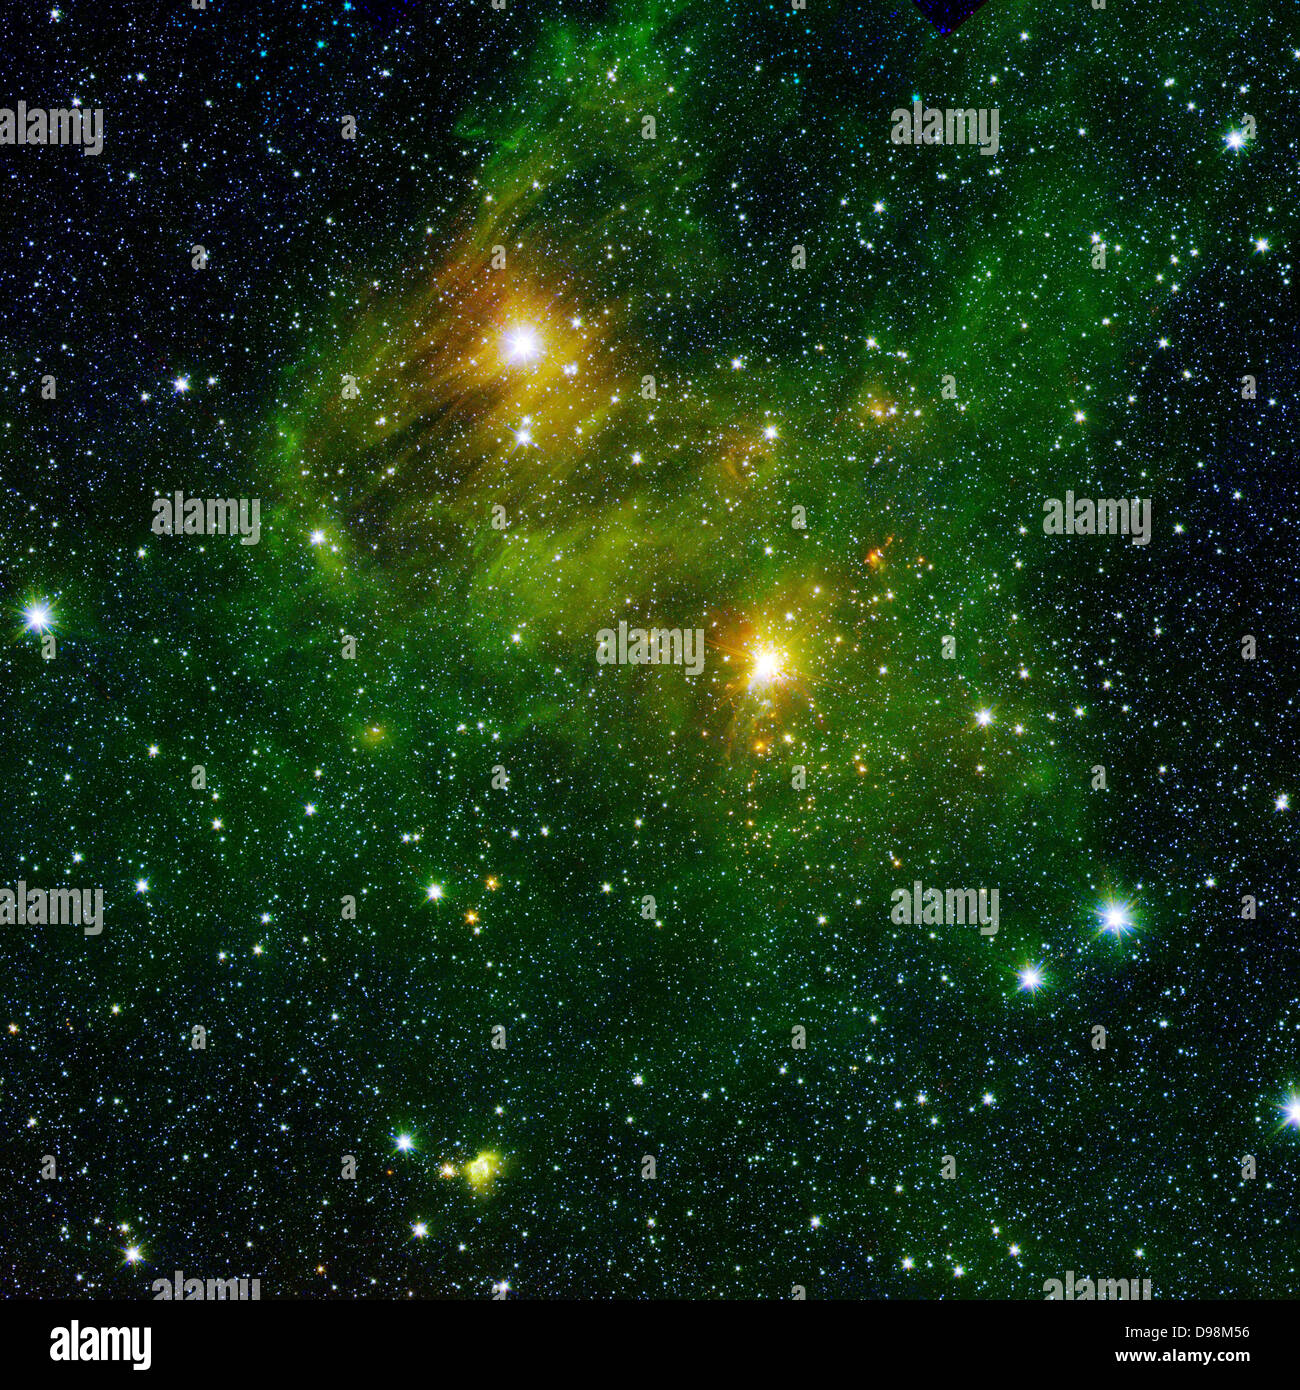 Zwei helle Sterne beleuchten einen grünlichen Nebel in diesem und anderen Bildern aus der neuen "GLIMPSE360"-Umfrage von der NASA Spitzer Space Stockfoto